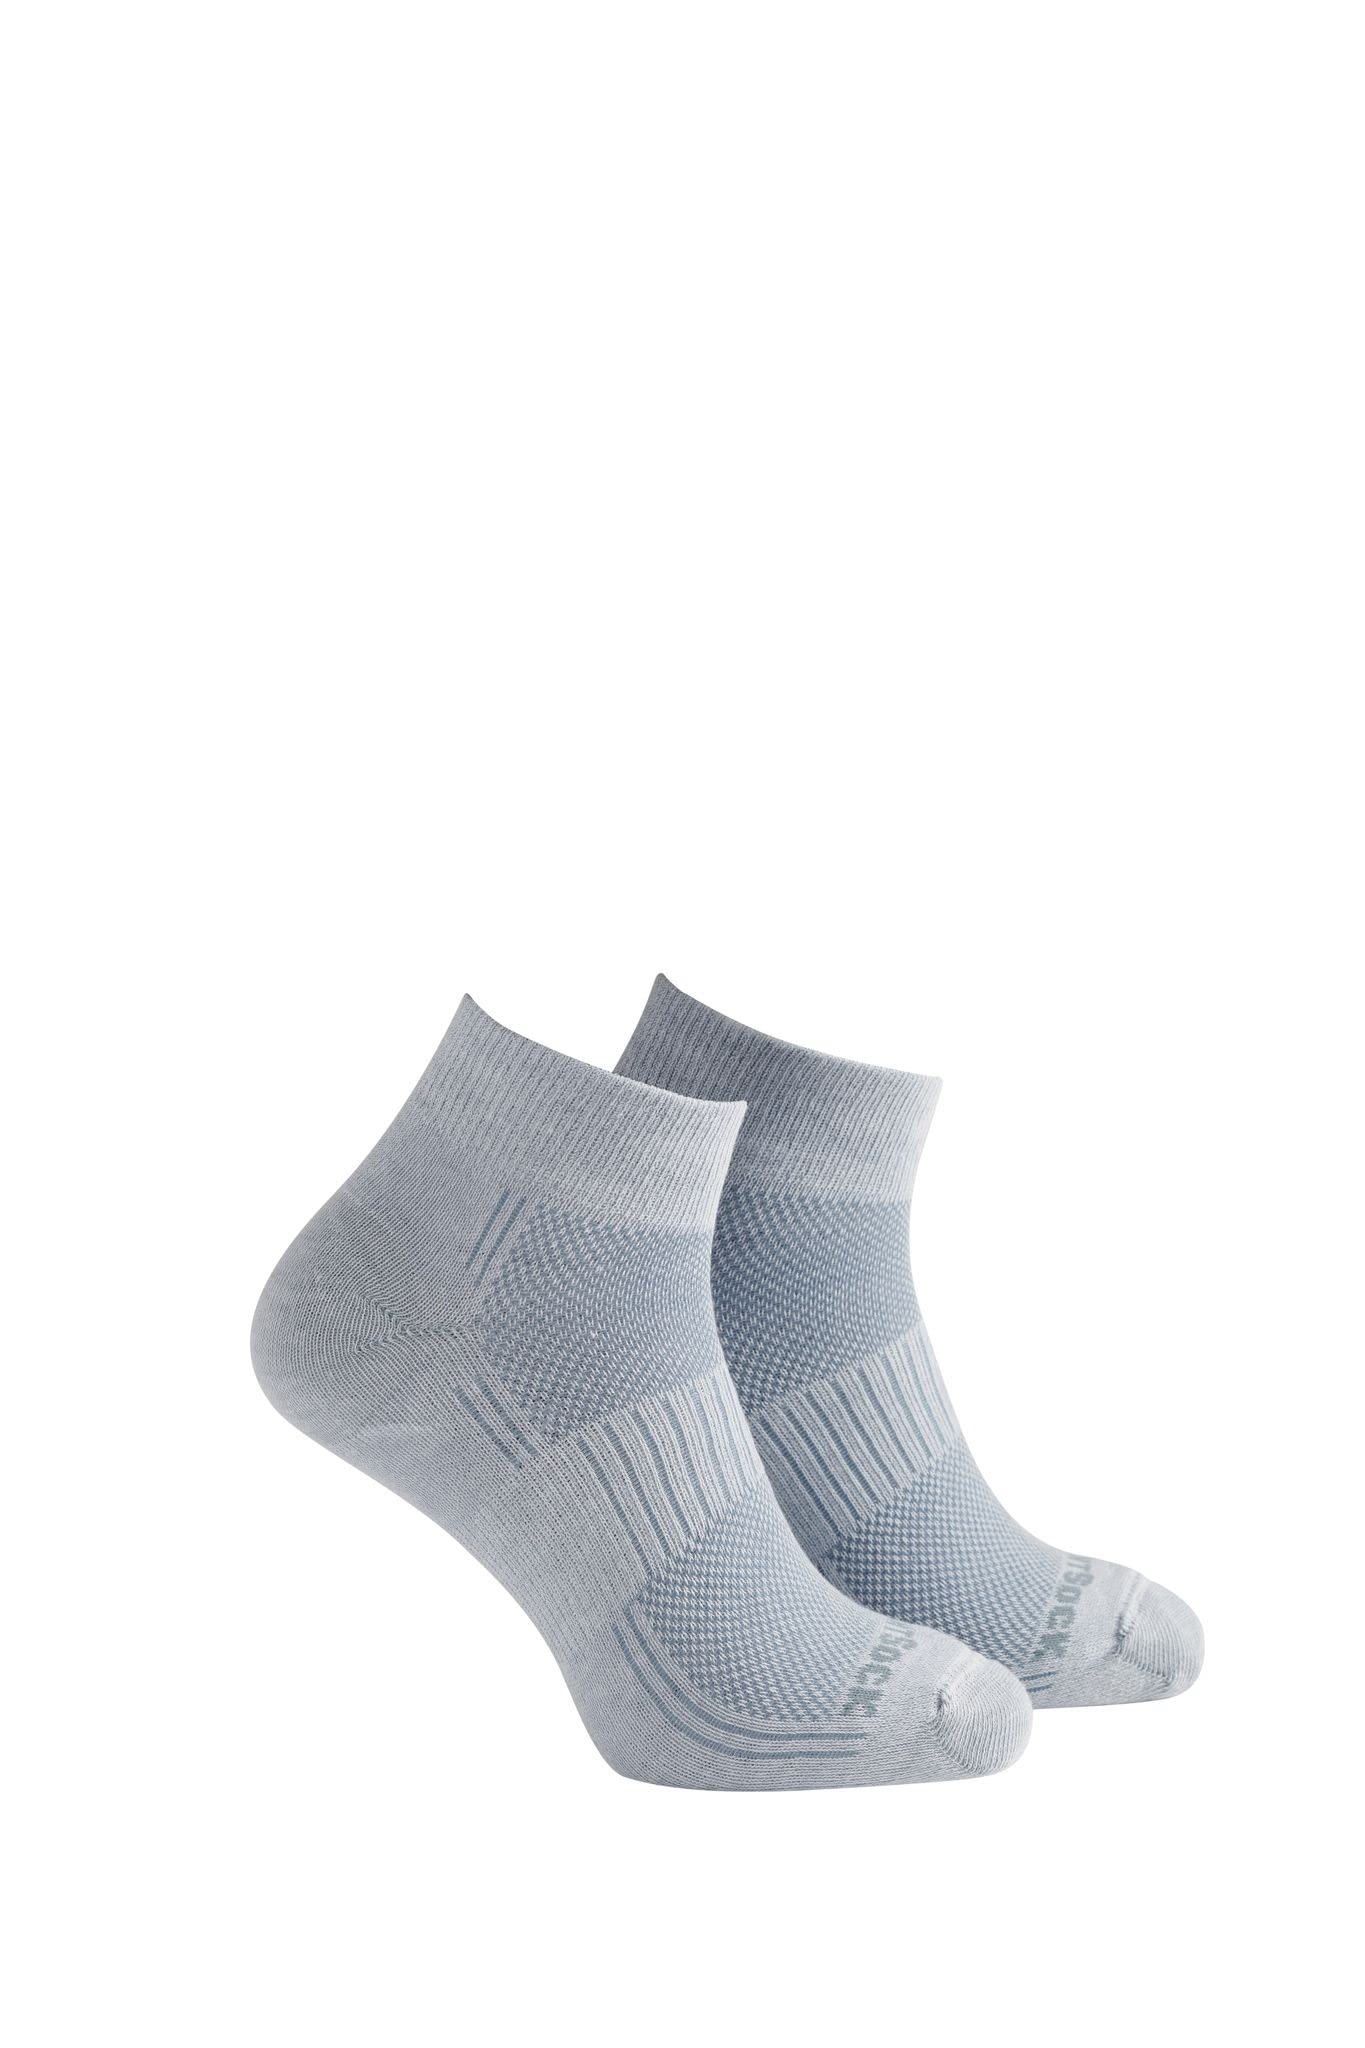 Wrightsock Unisex Blister Free Socks, Coolmesh II, Quarter